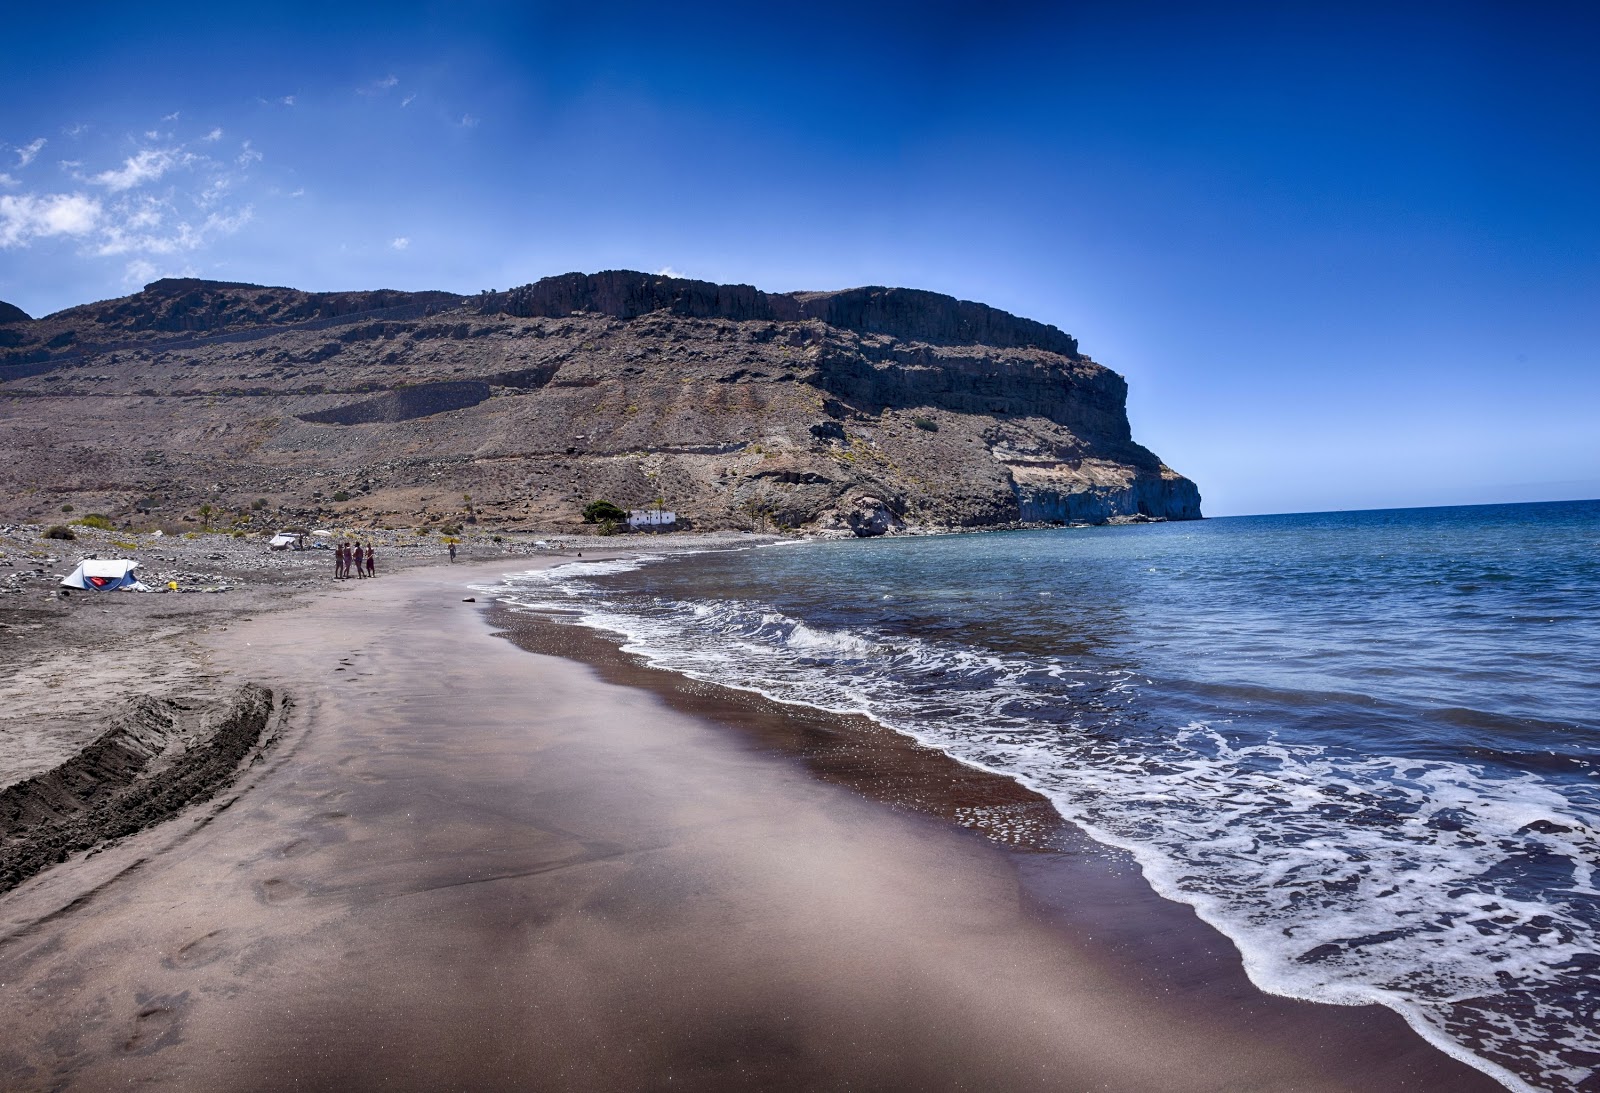 Playa de Veneguera'in fotoğrafı gri kum ve çakıl yüzey ile